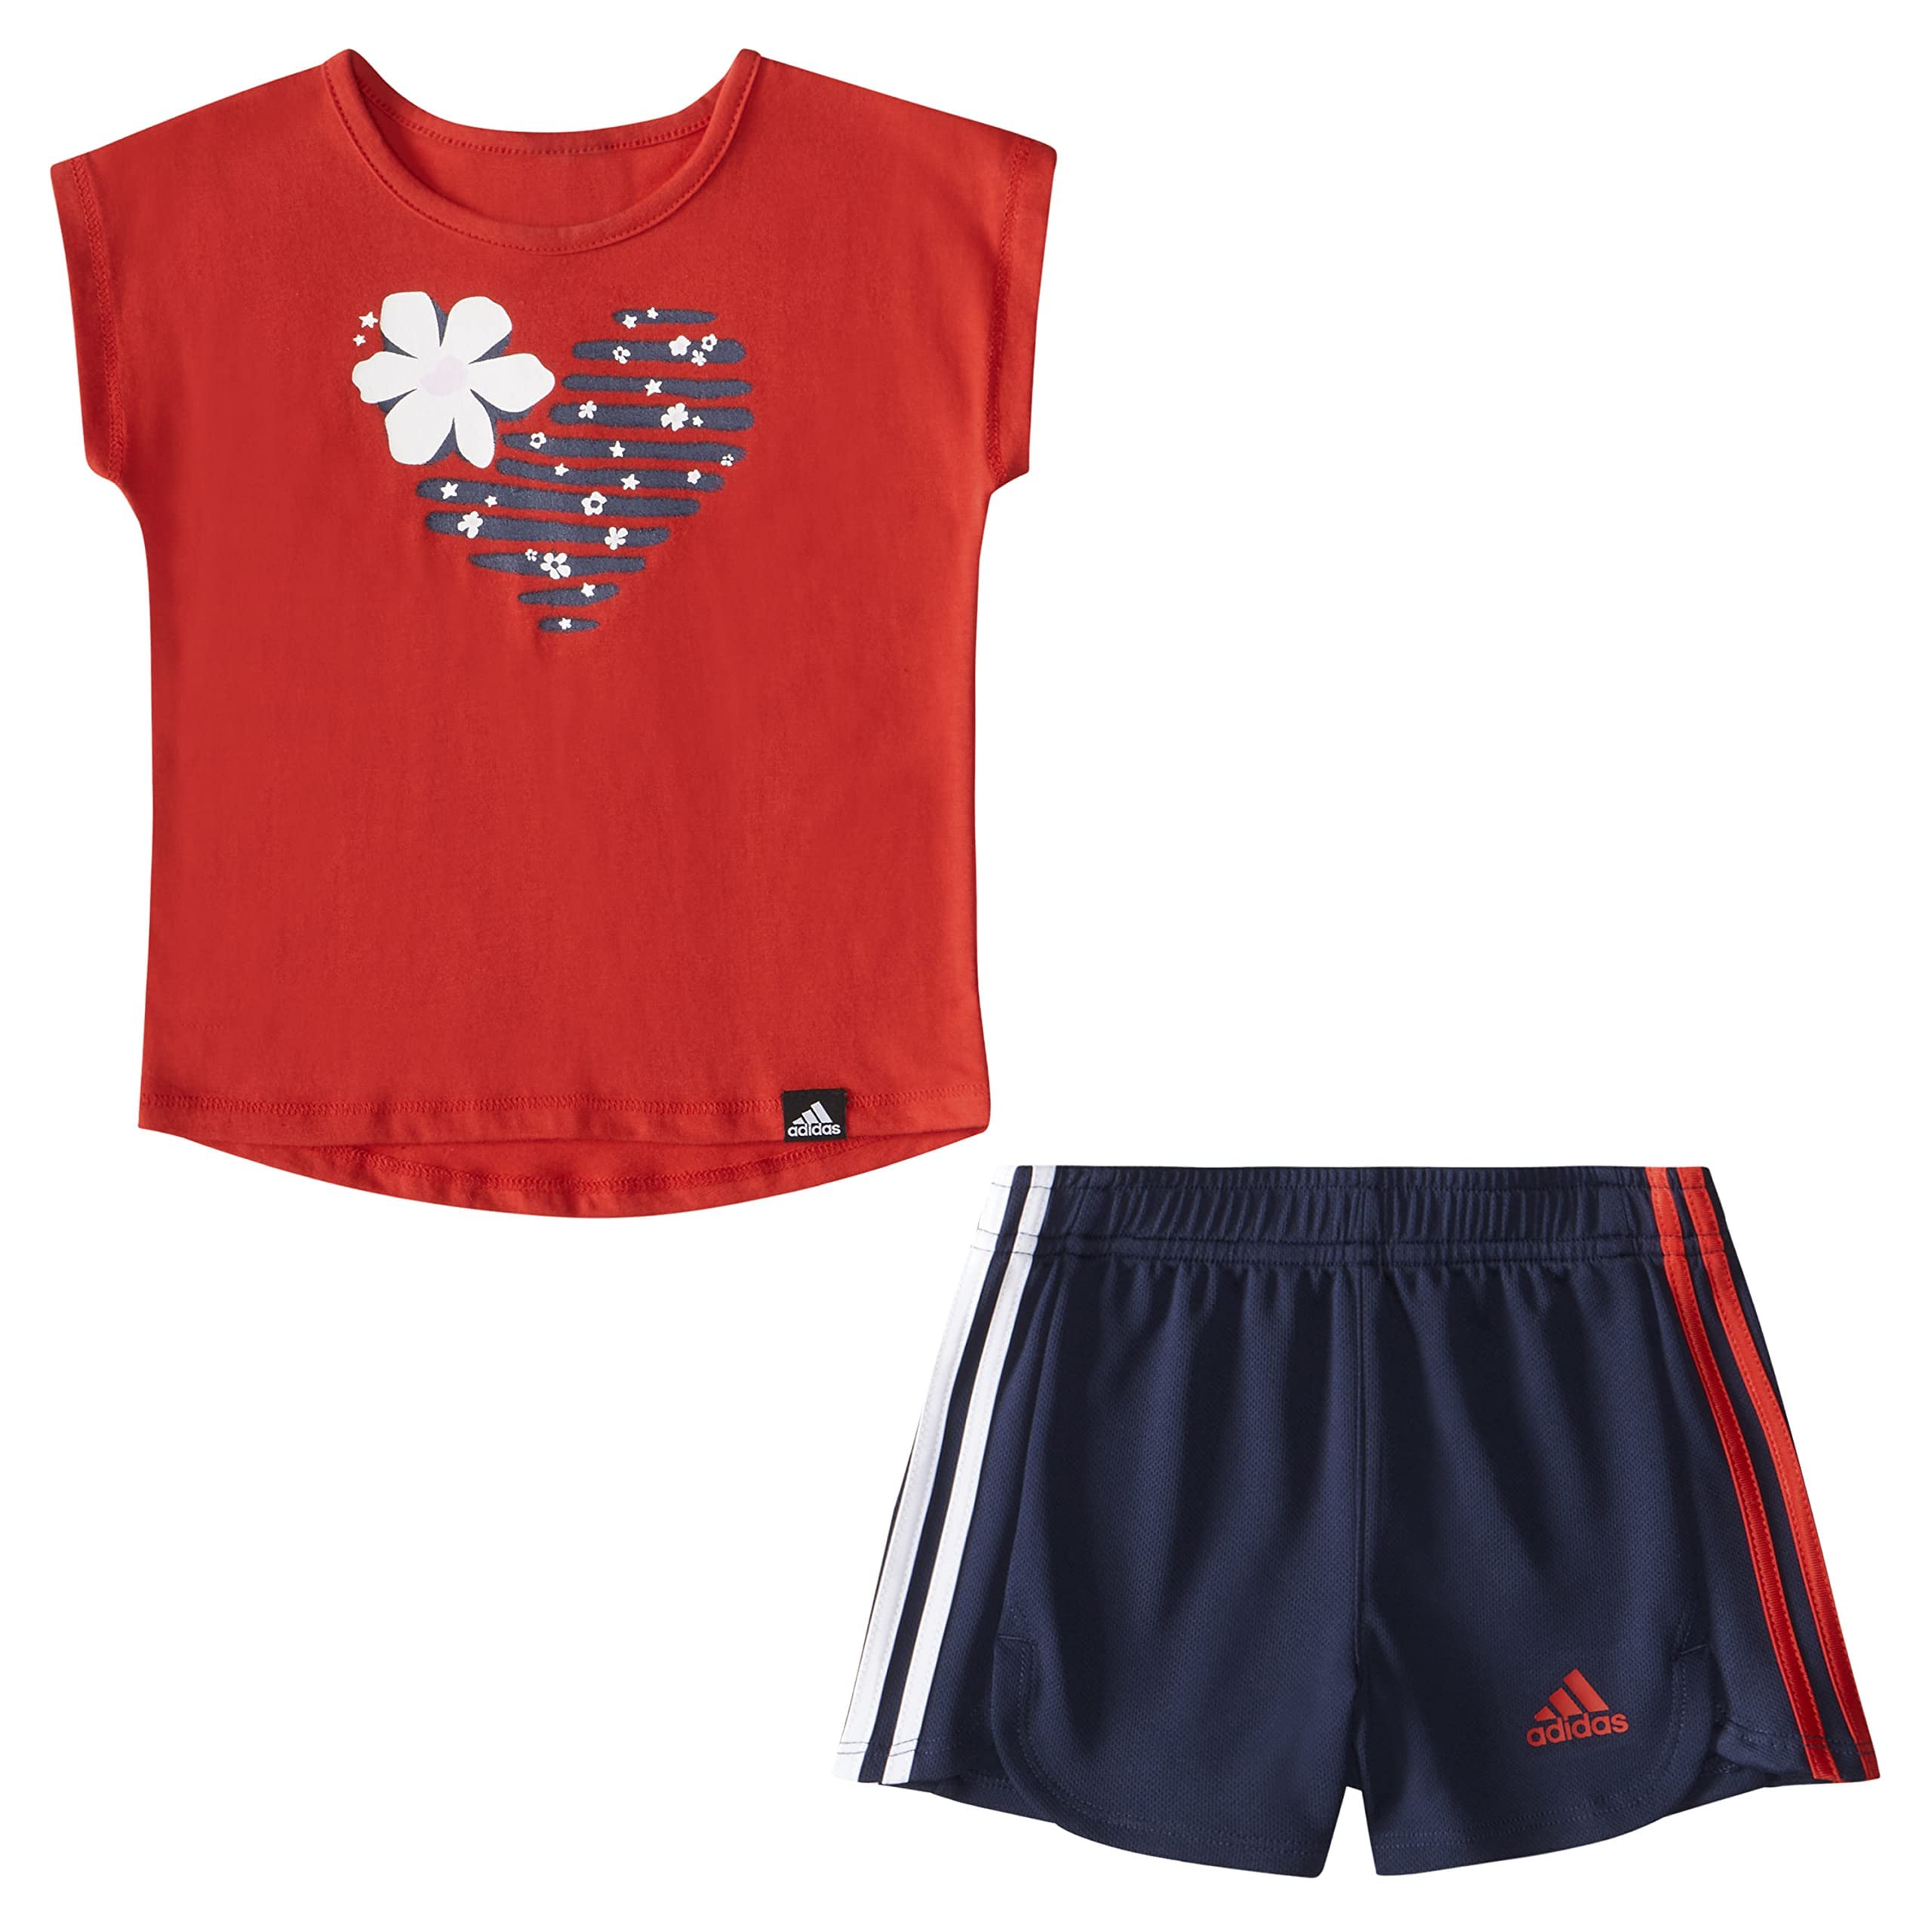 Футболка с рисунком и шорты в сеточку (для младенцев) Adidas